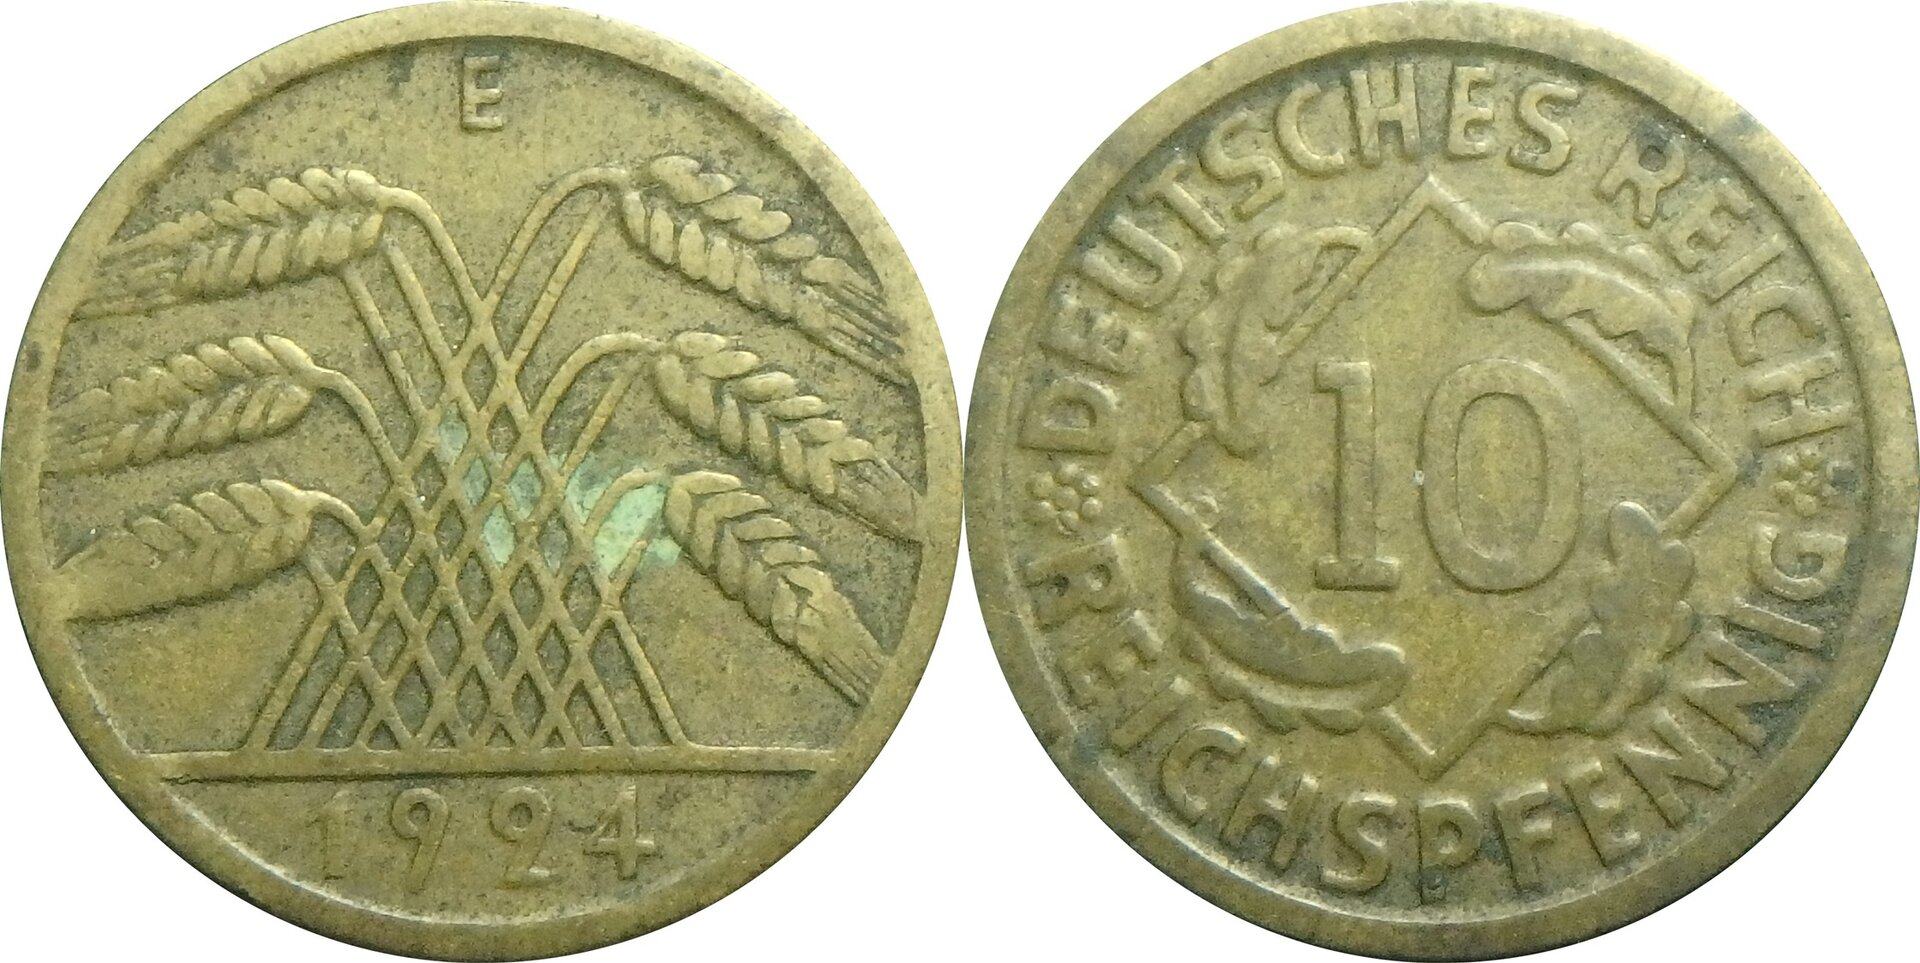 1924 E DE 10 p.jpg